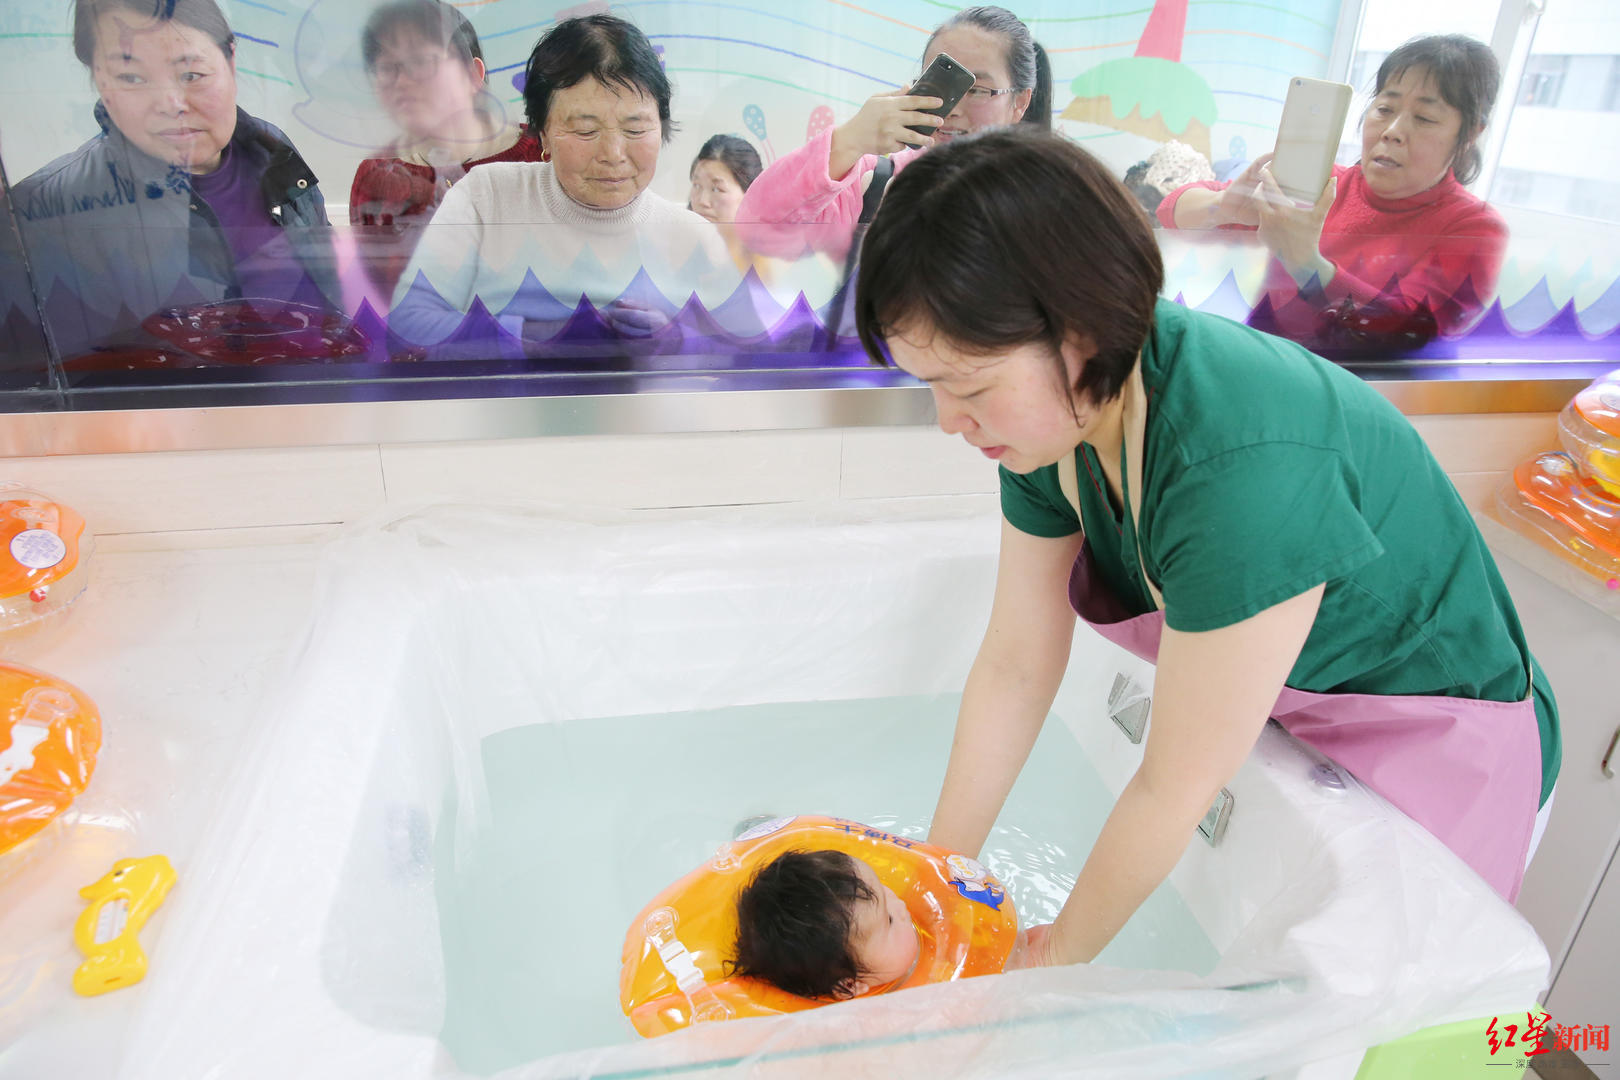 ↑江苏省南通市第六人民医院六院婴儿游泳中心 据视觉中国